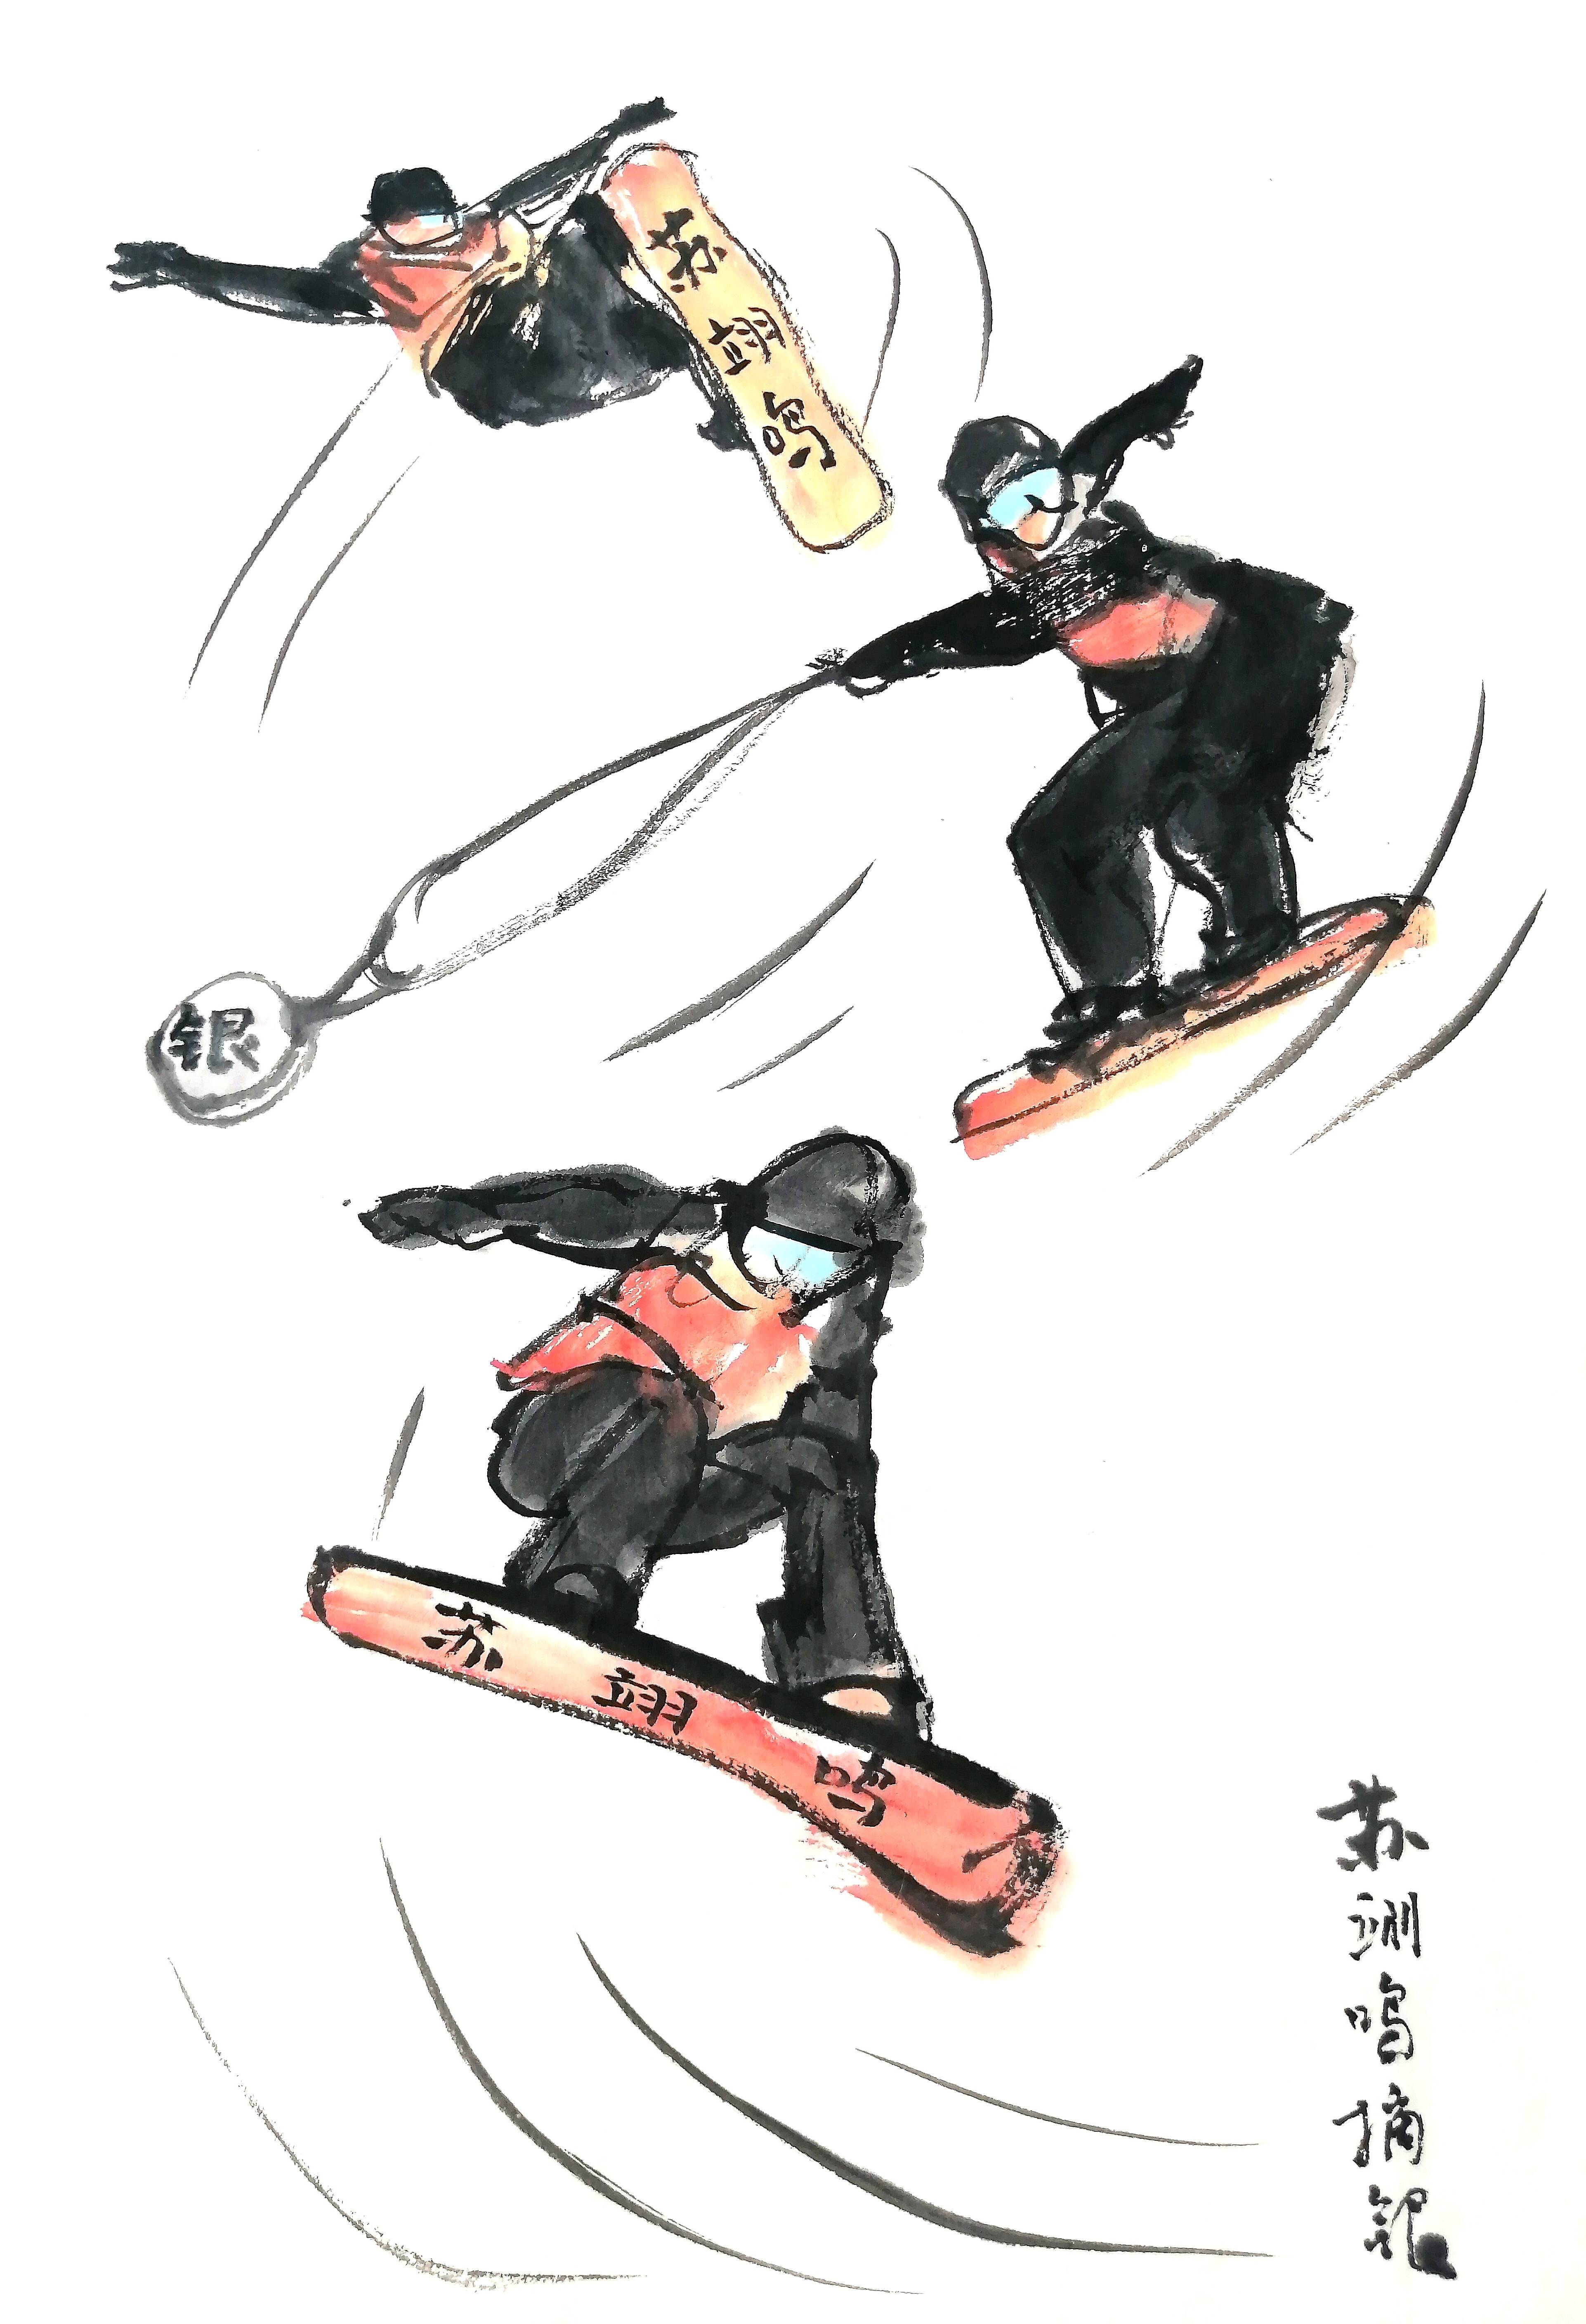 北京冬奥会素描画图片